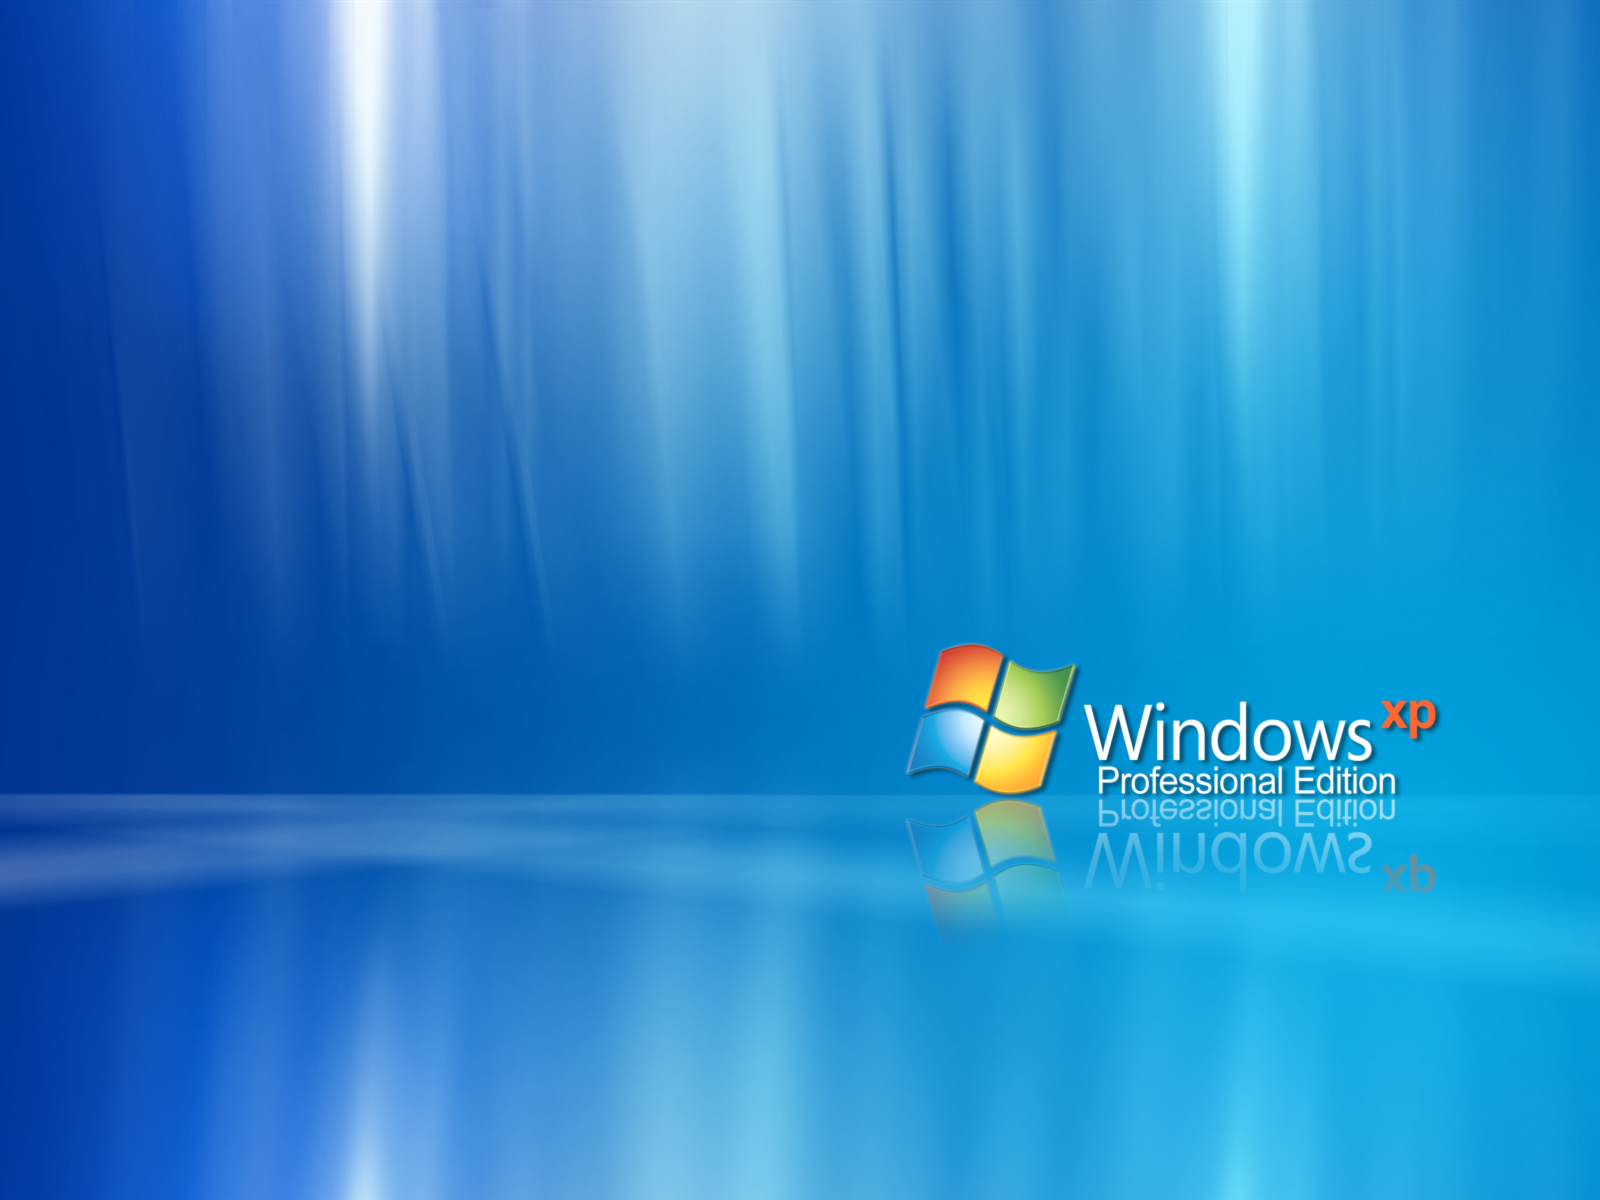 Windows Xp Photos